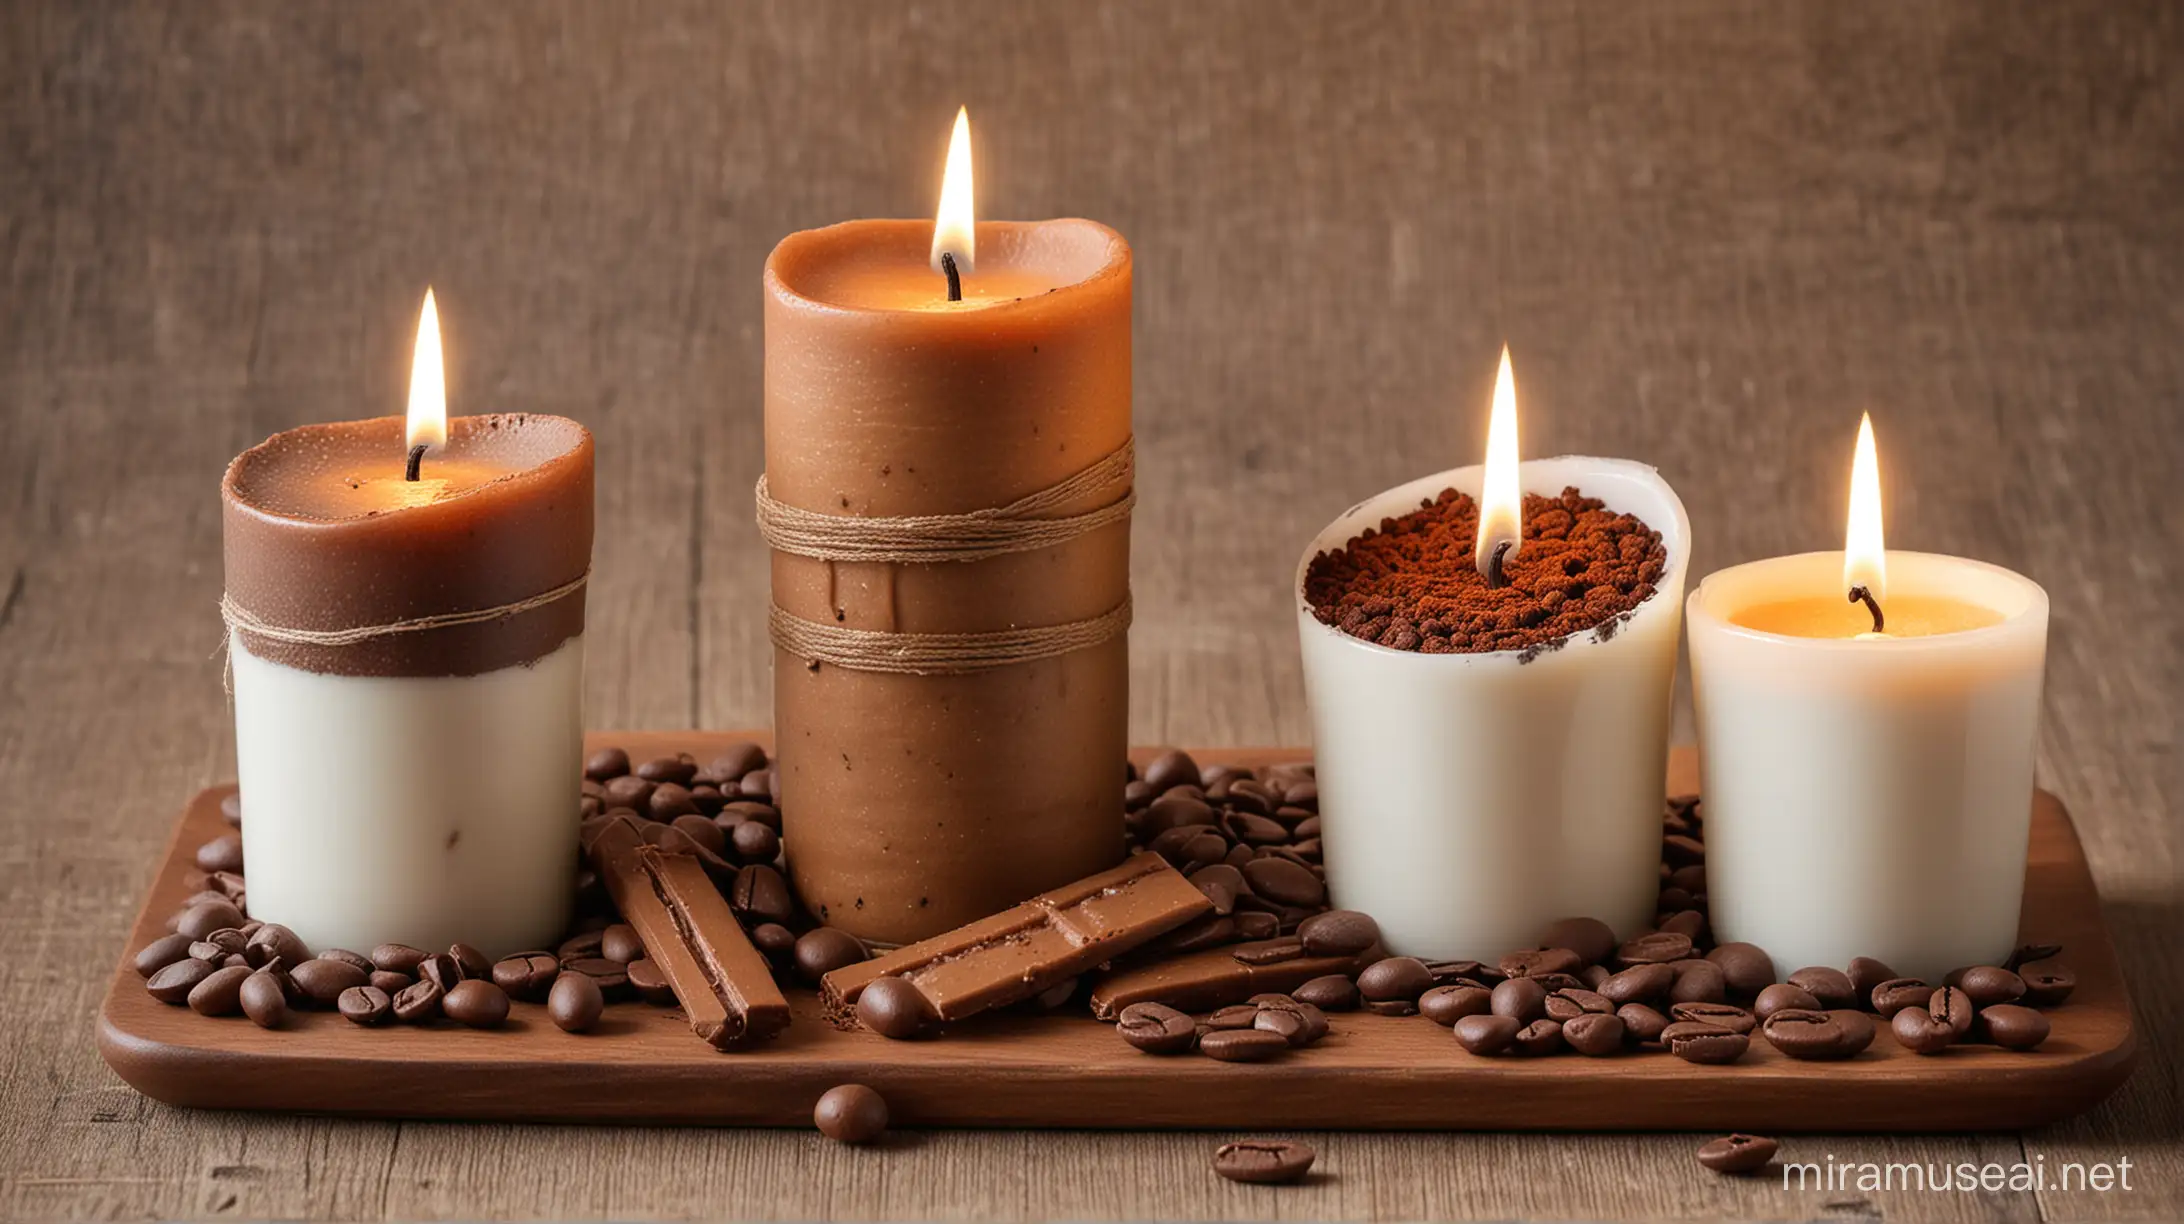 Varias Velas artesanales aromaticas, hechos de borra de cafe, granos de cafe, granos de chocolate, taza de cafe, tableta de chocolate